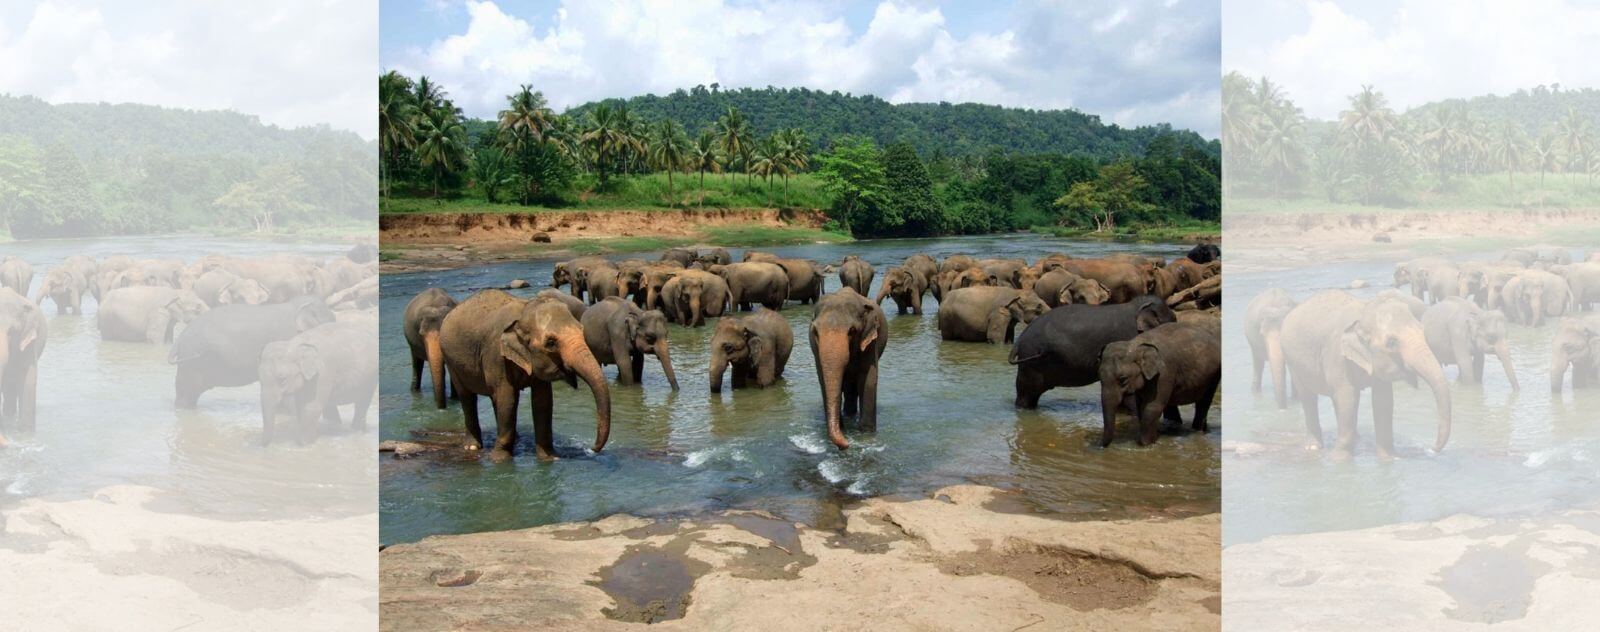 Manada de elefantes bebiendo agua en un río